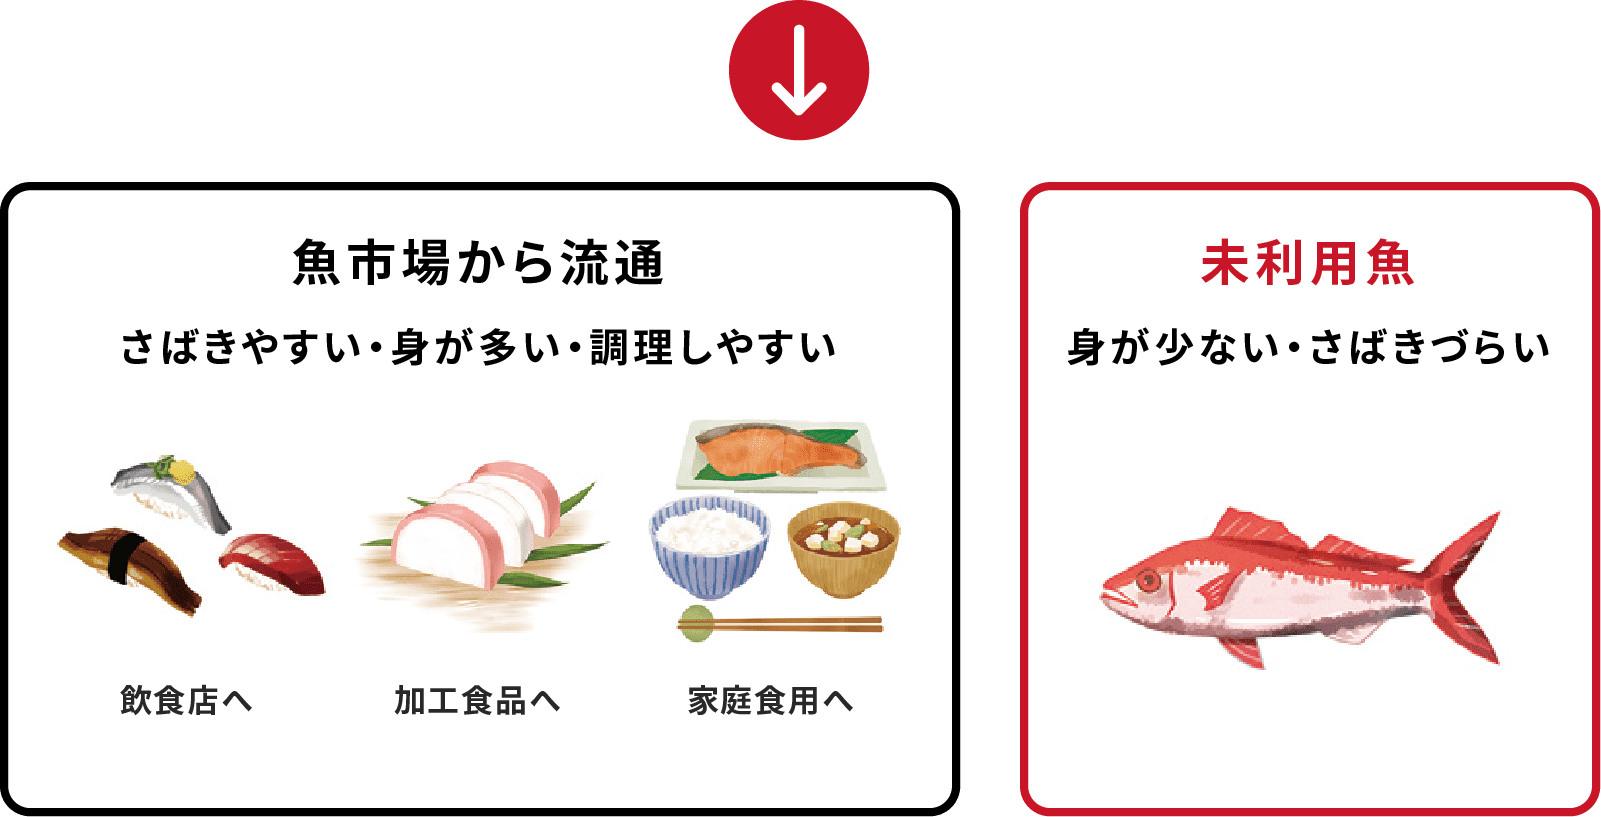 魚市場から流通する魚はさばきやすく身が多く調理しやすいのに対して、未利用魚は身が少なくさばきにくい